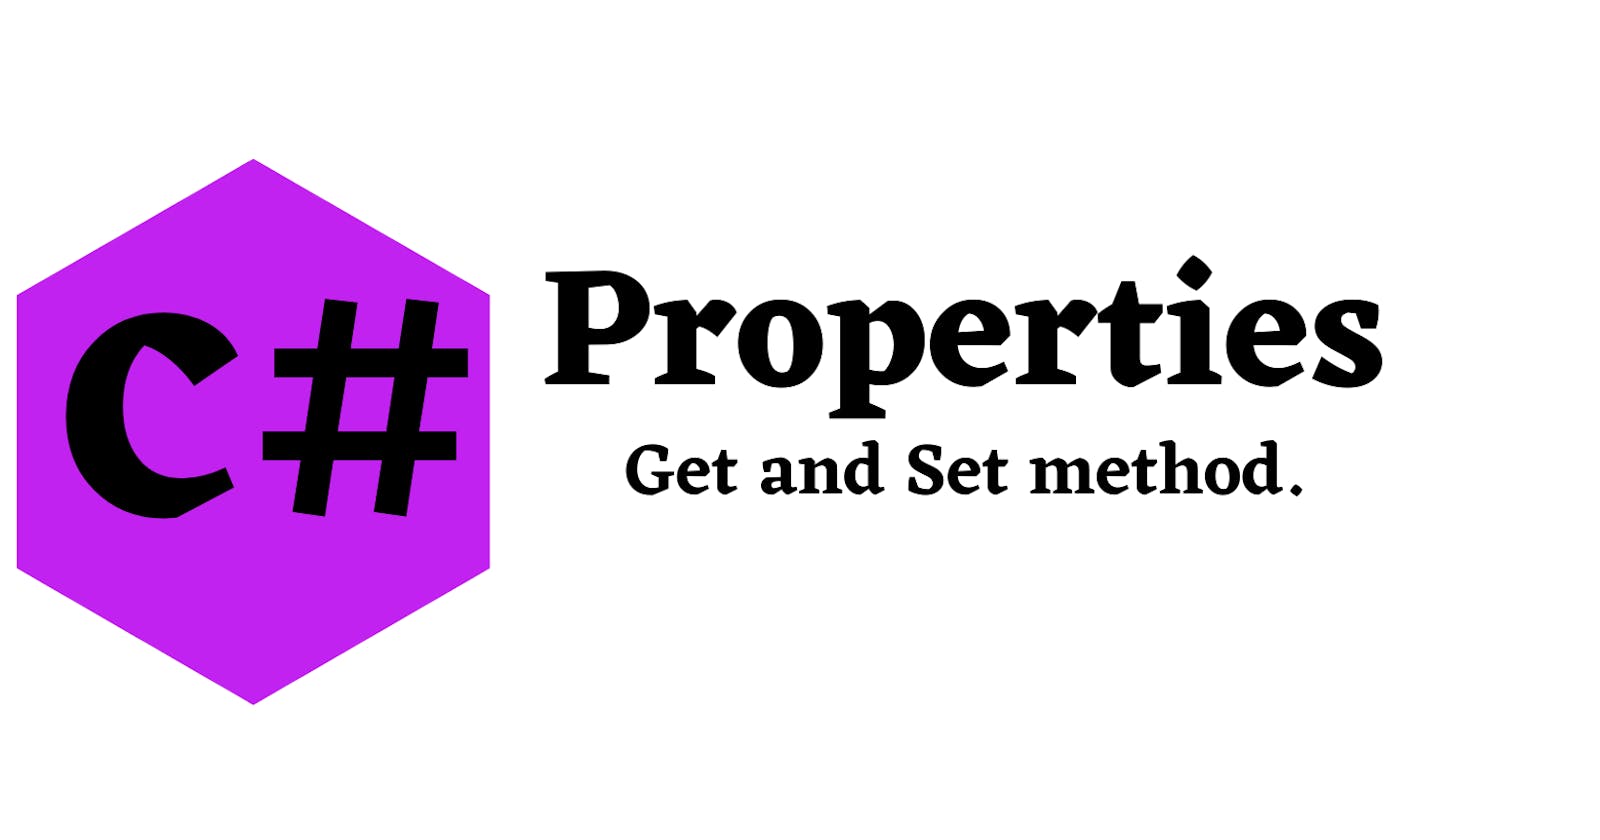 C# Properties